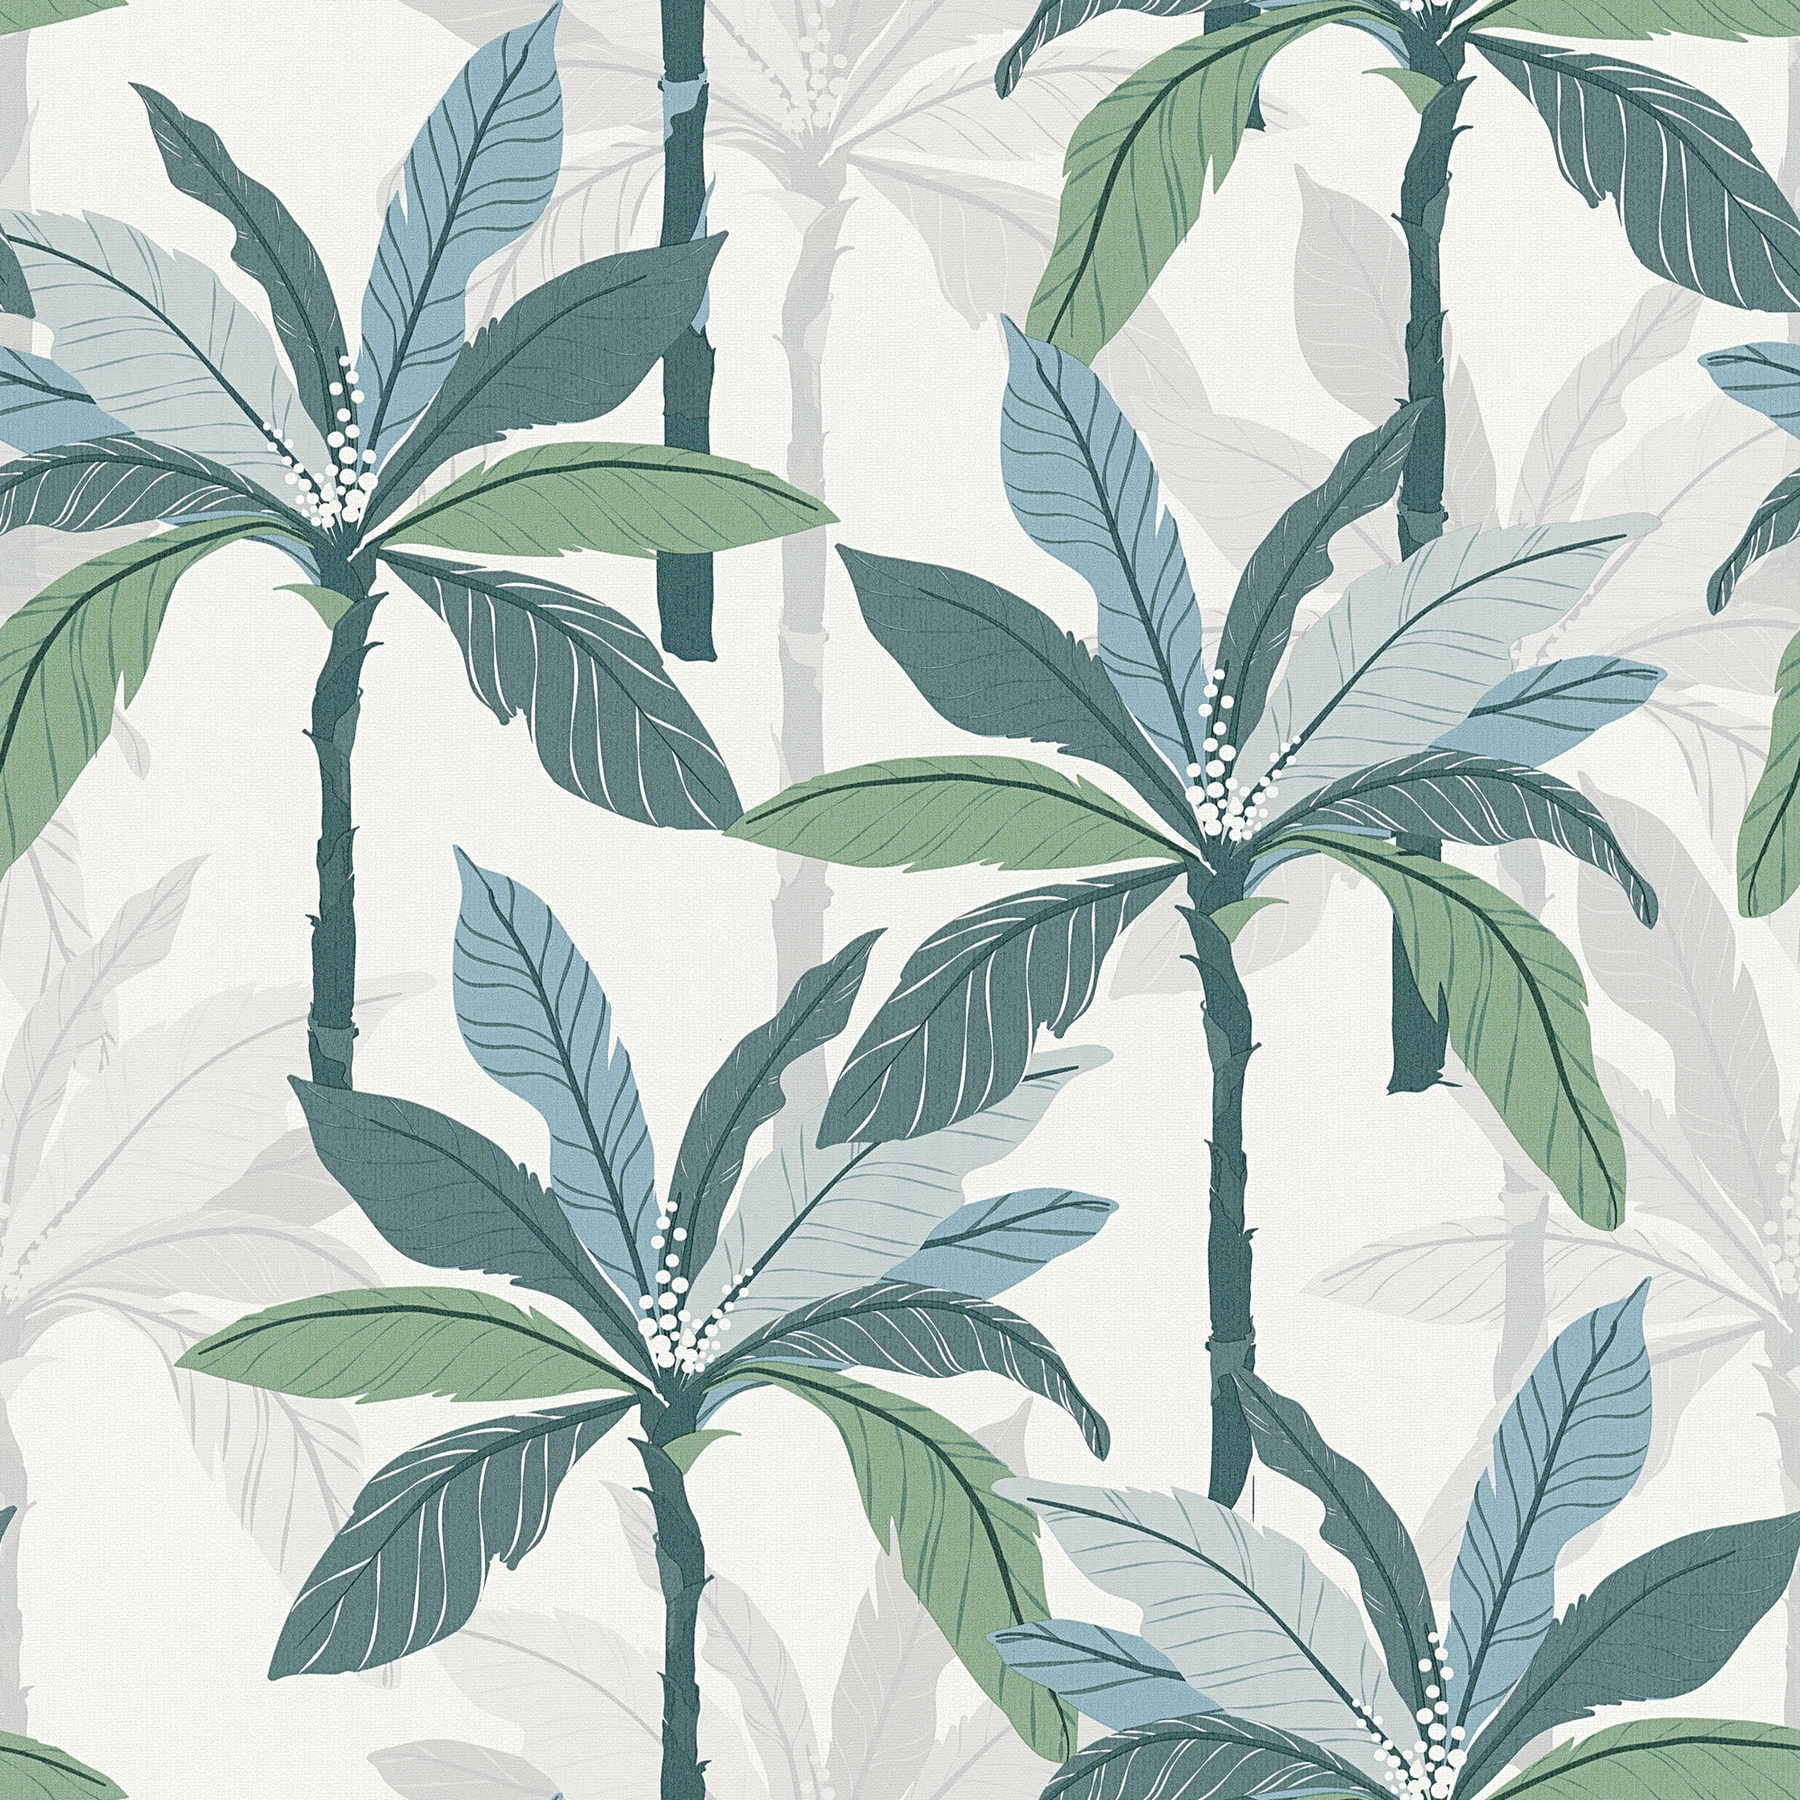 Papier peint tropical avec design de palmiers - bleu, vert, blanc
